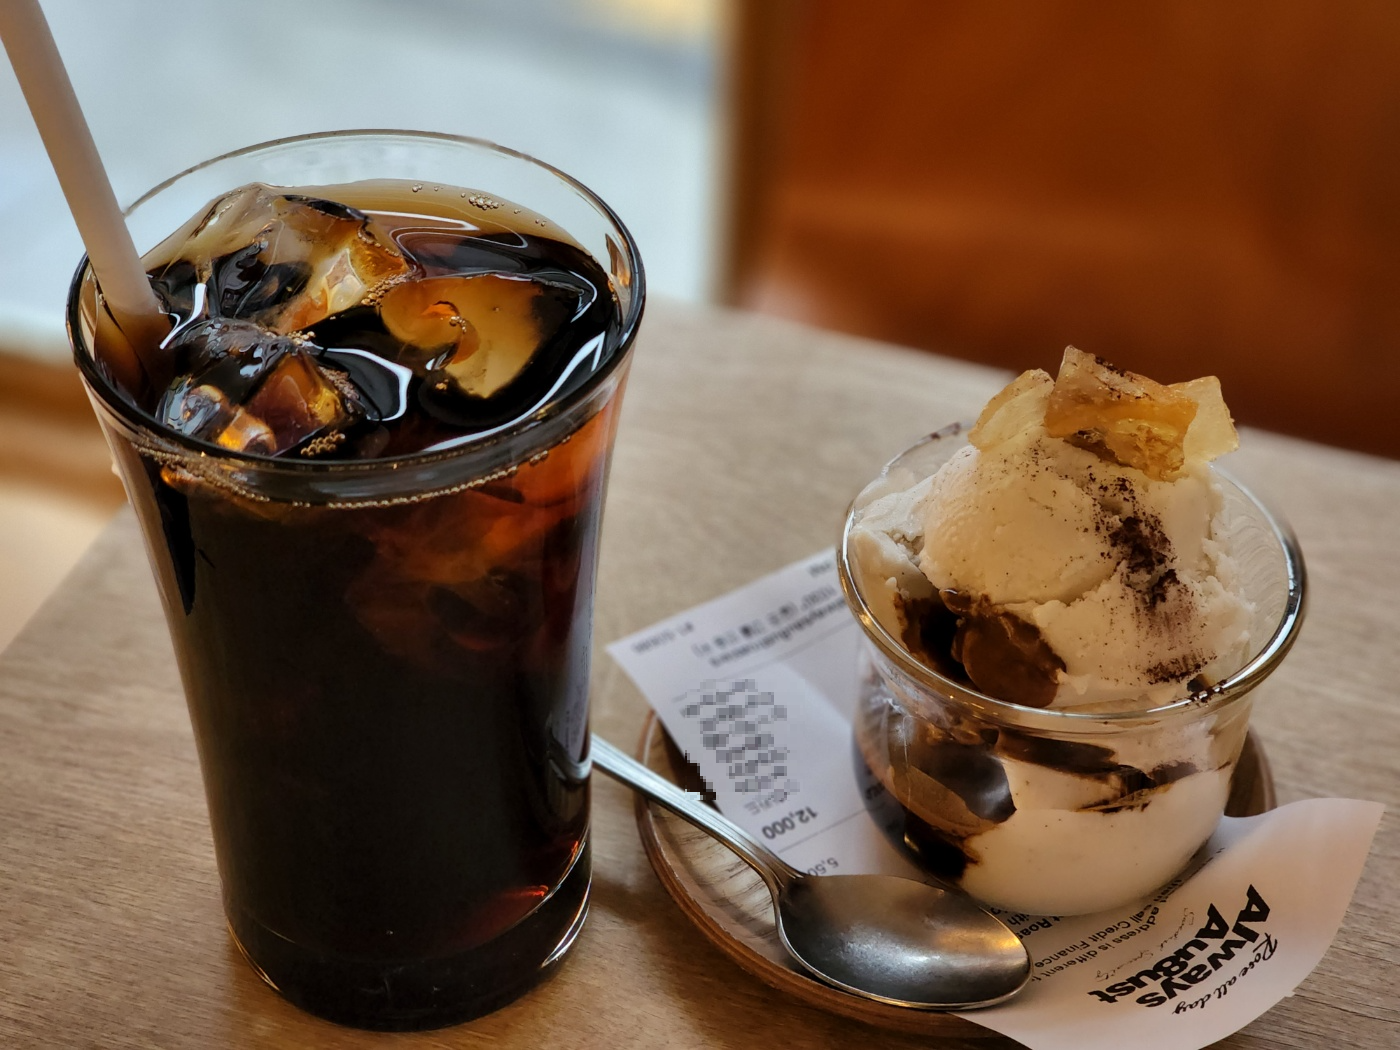 긴 투명한 컵에 가득담긴 아이스커피 한잔과 그 옆에 나무 코스터와 작은 투명한 잔 사이에 영수증을 끼워 놓은 작은 스푼과 함께 제공된 코르타도 아이스크림 메뉴